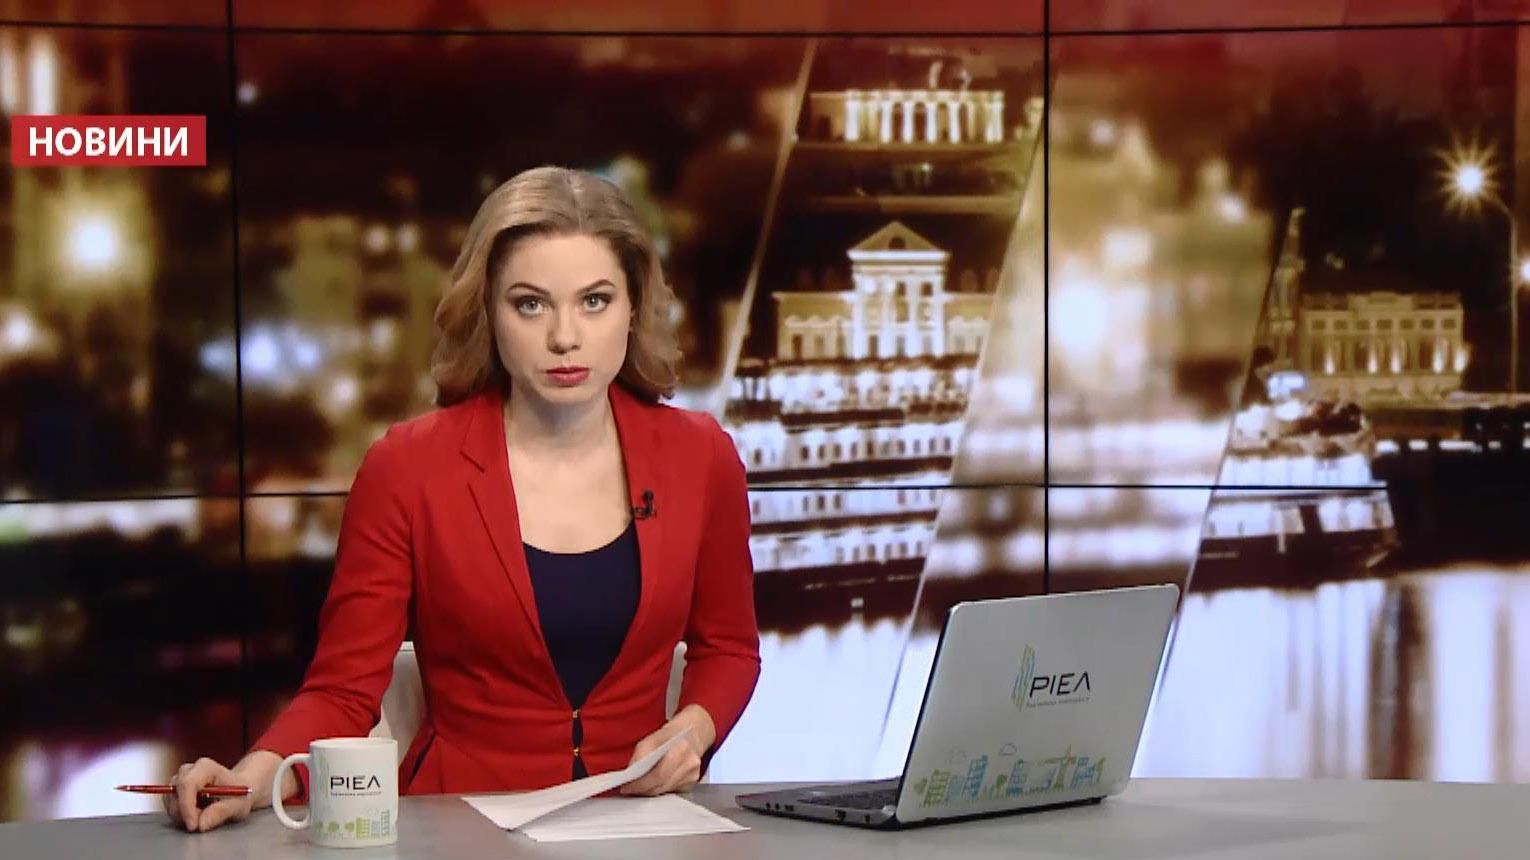 Выпуск новостей за 23:00: Подробности взрыва во Львове. Избирательные гонки Трампа и Клинтон